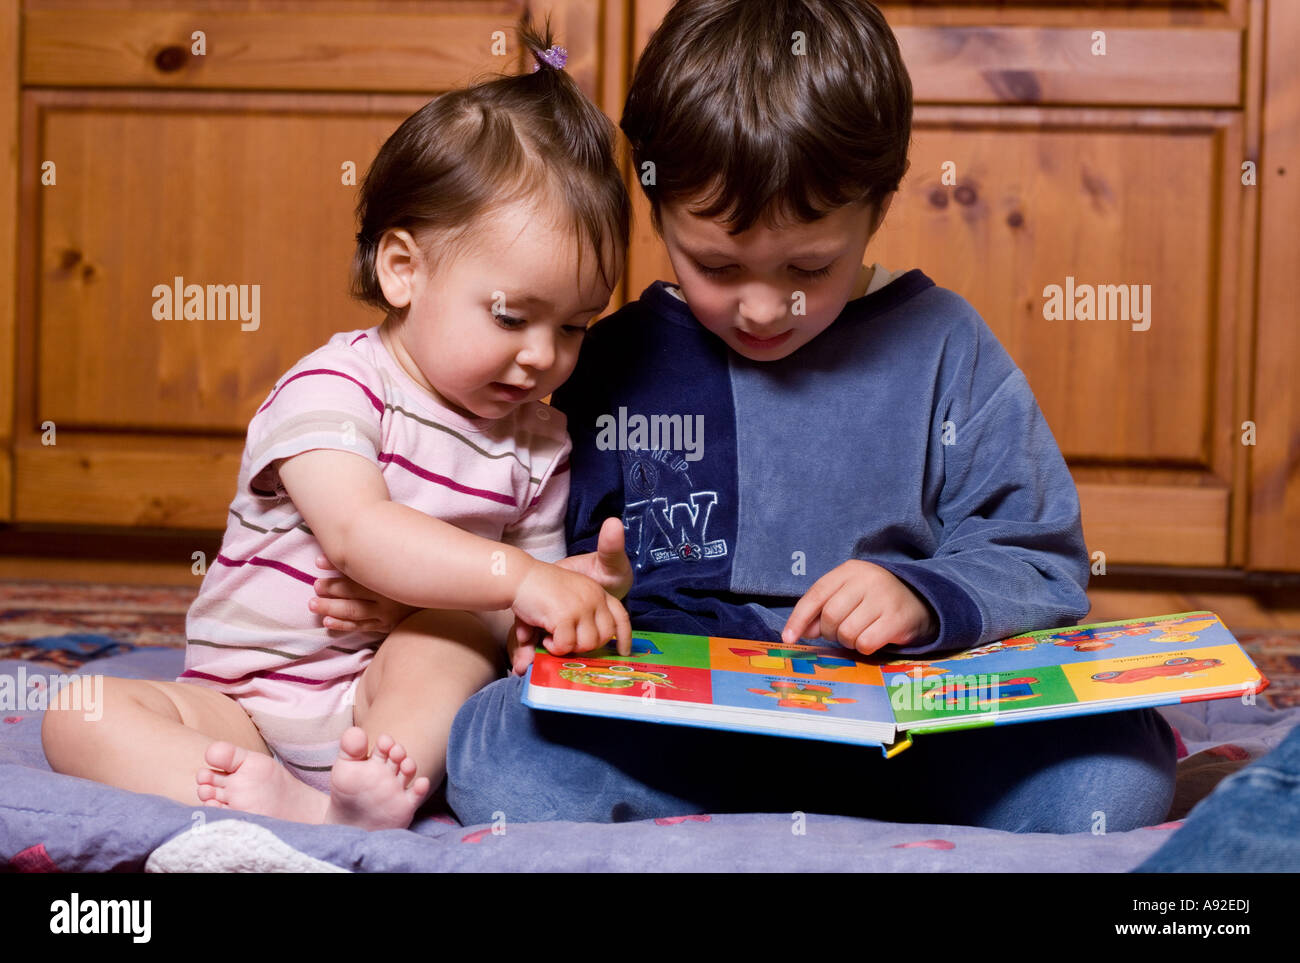 El hermano y la hermana mirando un libro de imágenes Foto de stock